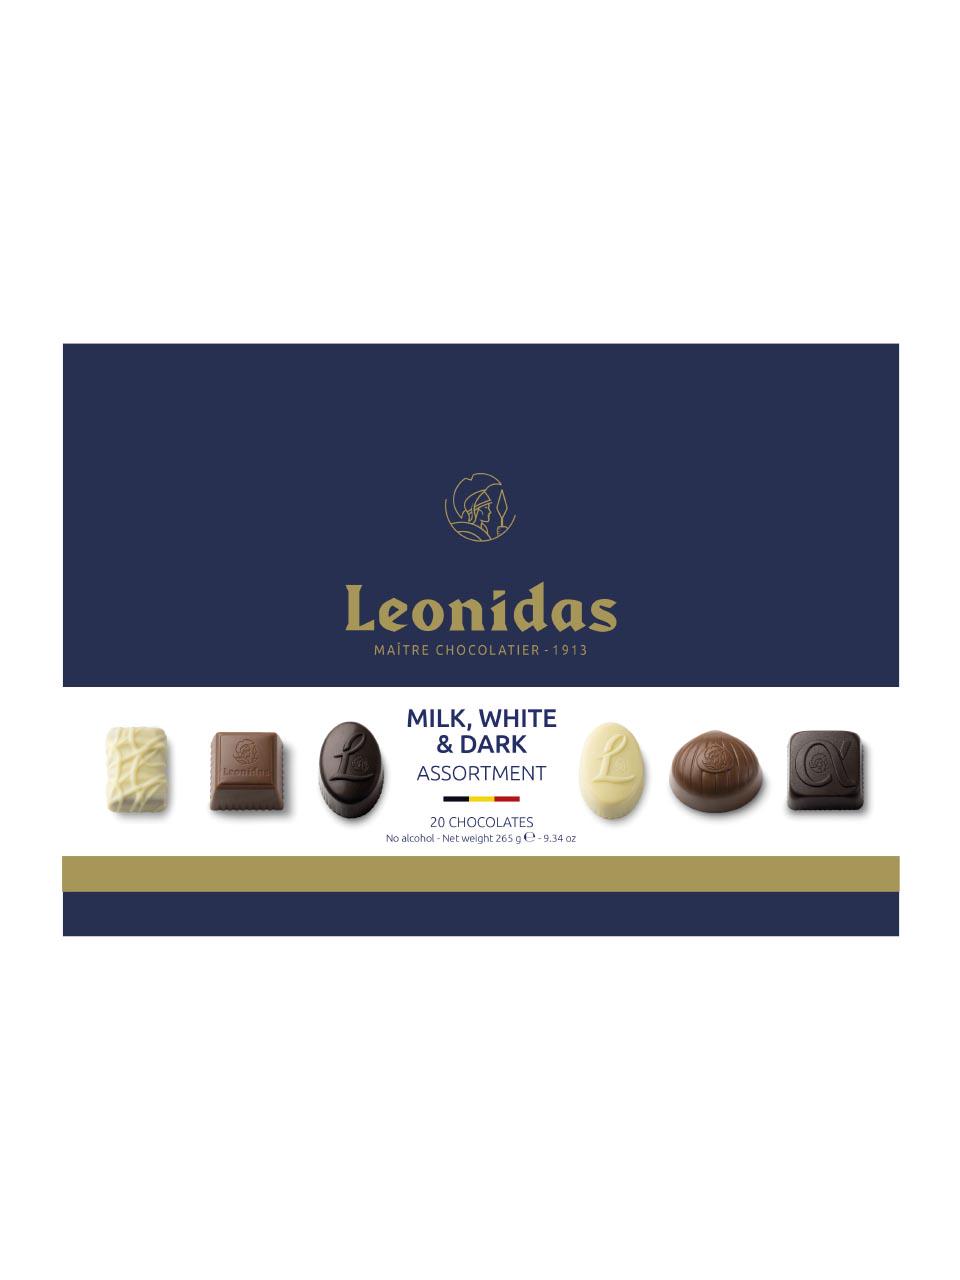 Leonidas Online Shop  Chocolats de liqueur pure 500g - Boutique